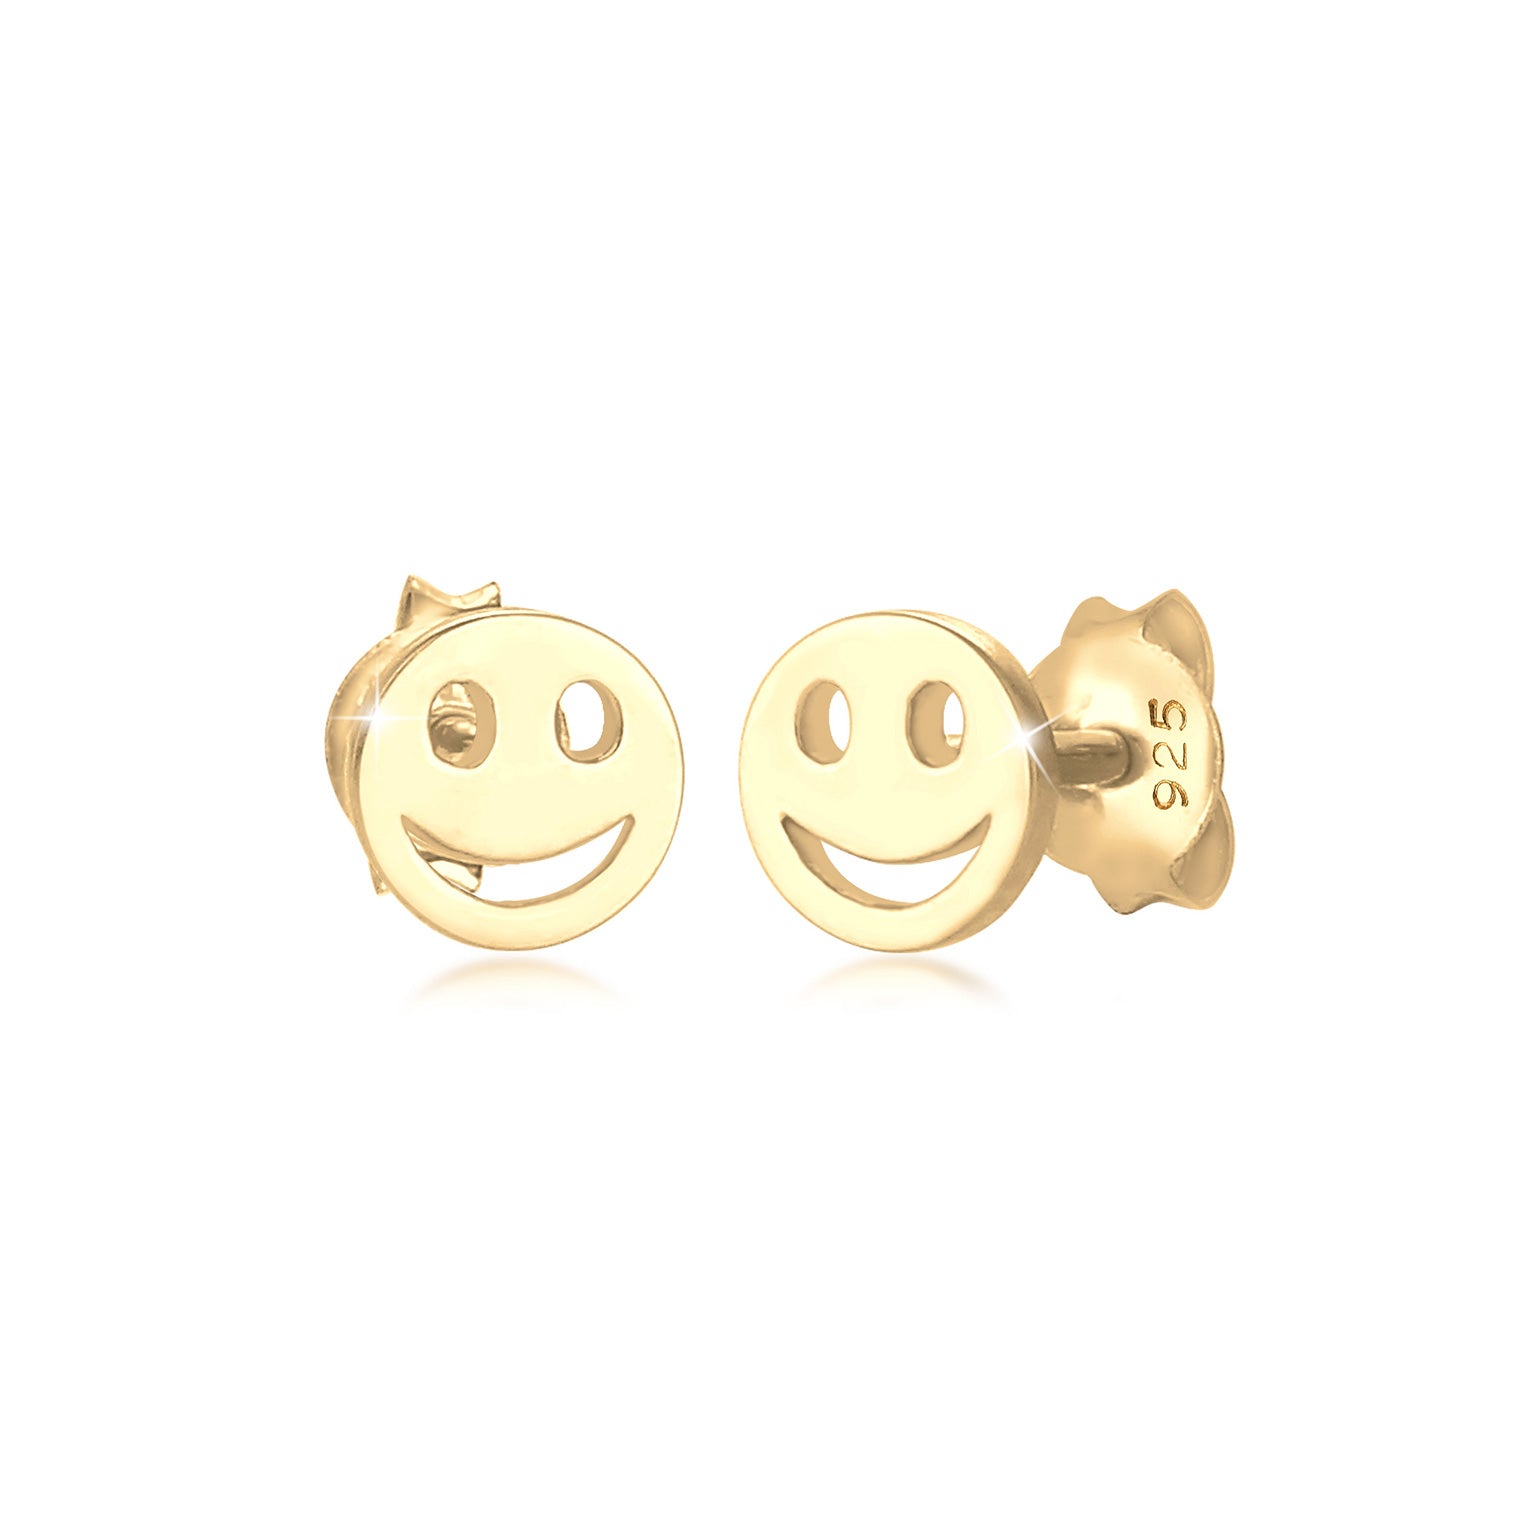 Gold - Elli | Ohrring mit Smiling Face | 925 Sterling Silber vergoldet